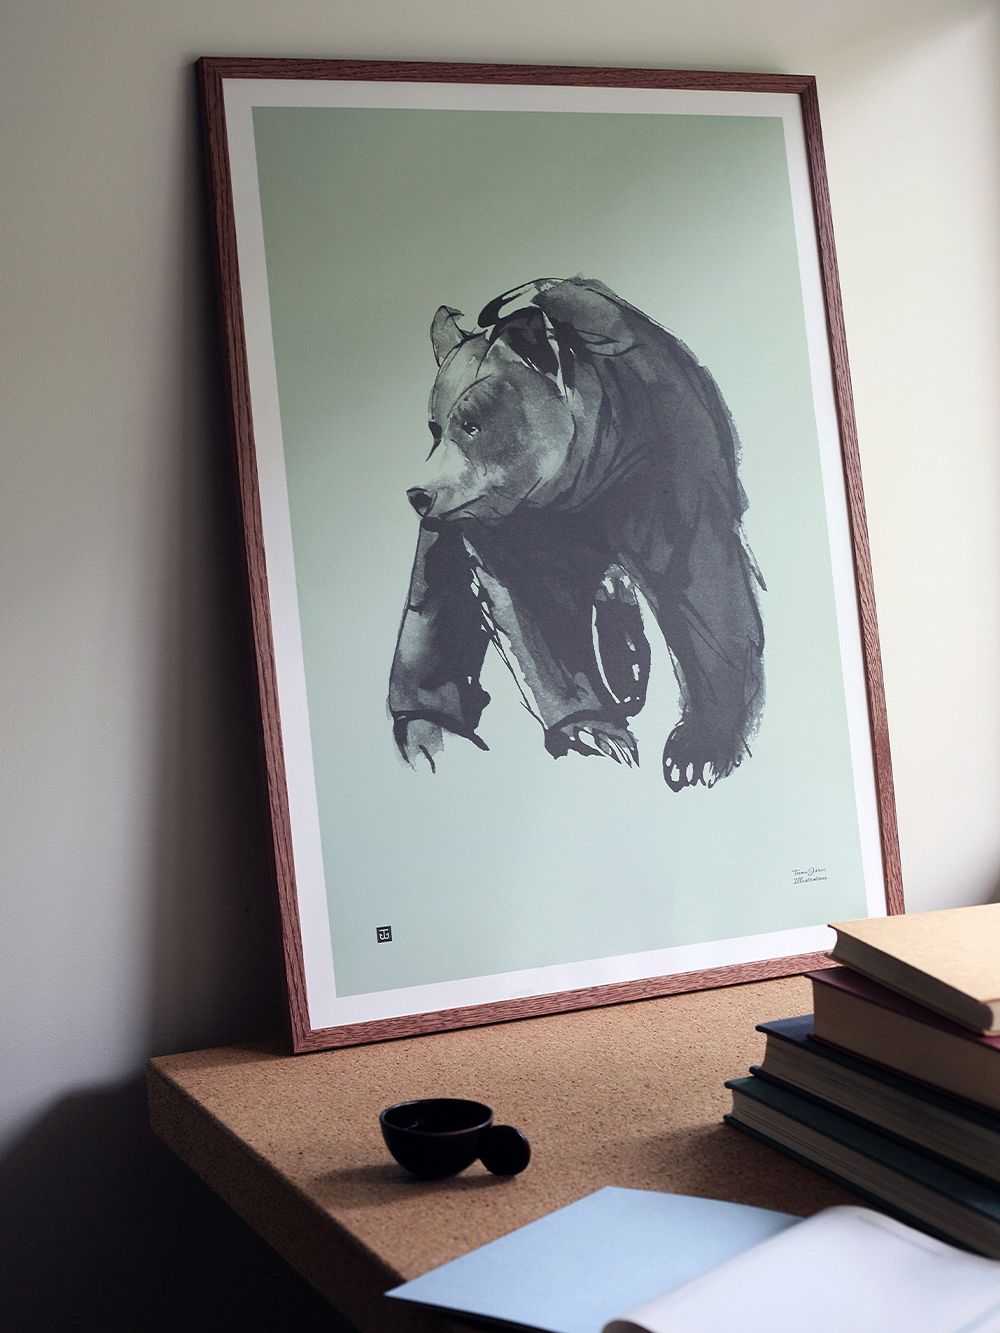 Teemu Järvi Illustrations Lempeä karhu juliste 50 x 70 cm, keväänvihreä